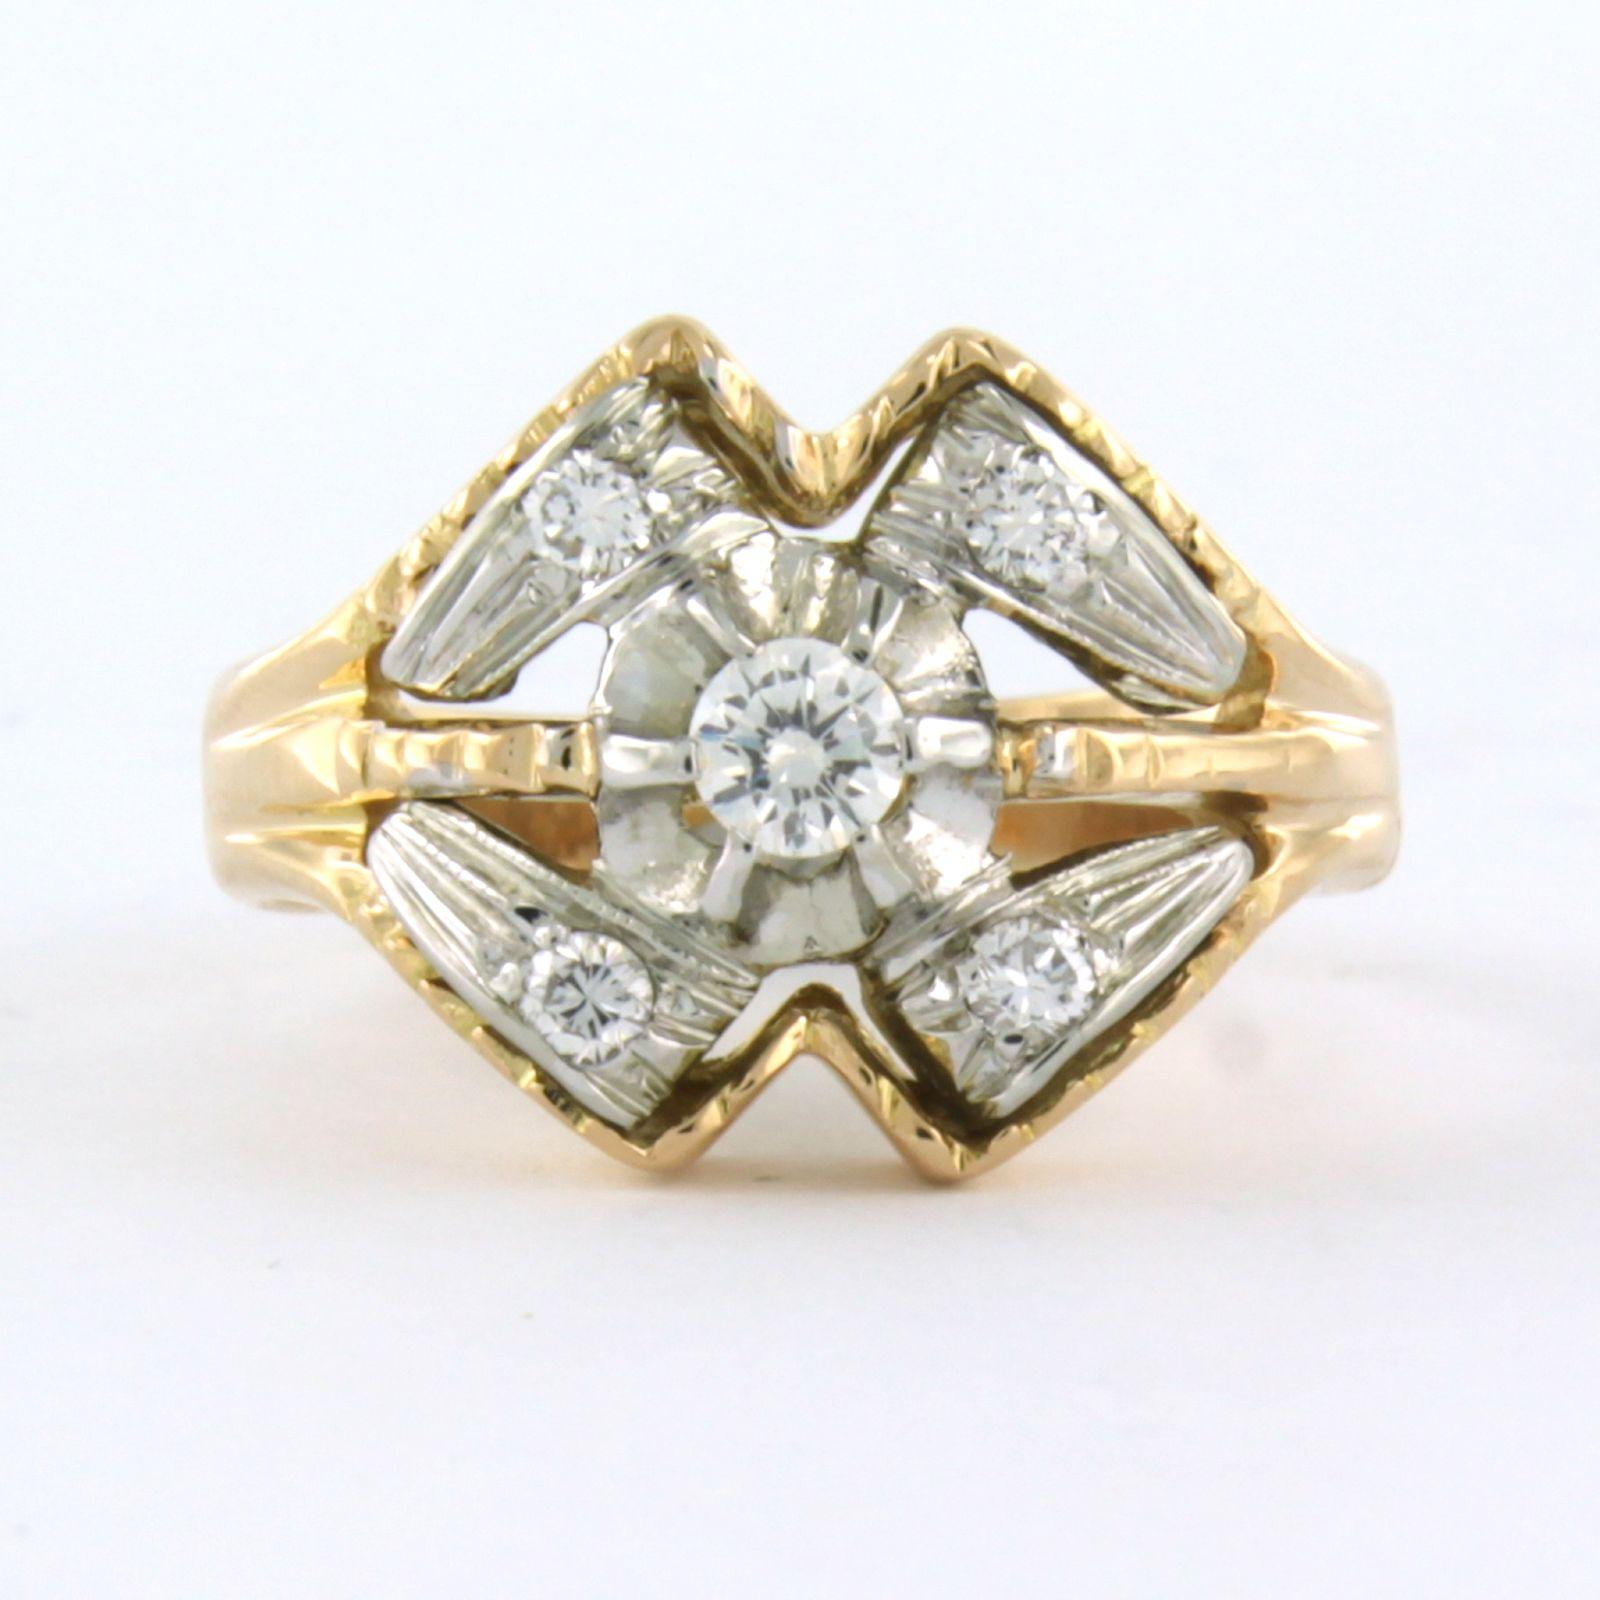 Ring aus 18 Karat Bicolor-Gold, besetzt mit Diamanten im Brillantschliff. 0,25ct - F/G - VS/SI - Ringgröße U.S. 6 - EU. 16.5(52)

Ausführliche Beschreibung

die Oberseite des Rings ist 1,3 cm breit und 6,5 mm hoch

Gewicht 6,2 Gramm

Ringgröße U.S.